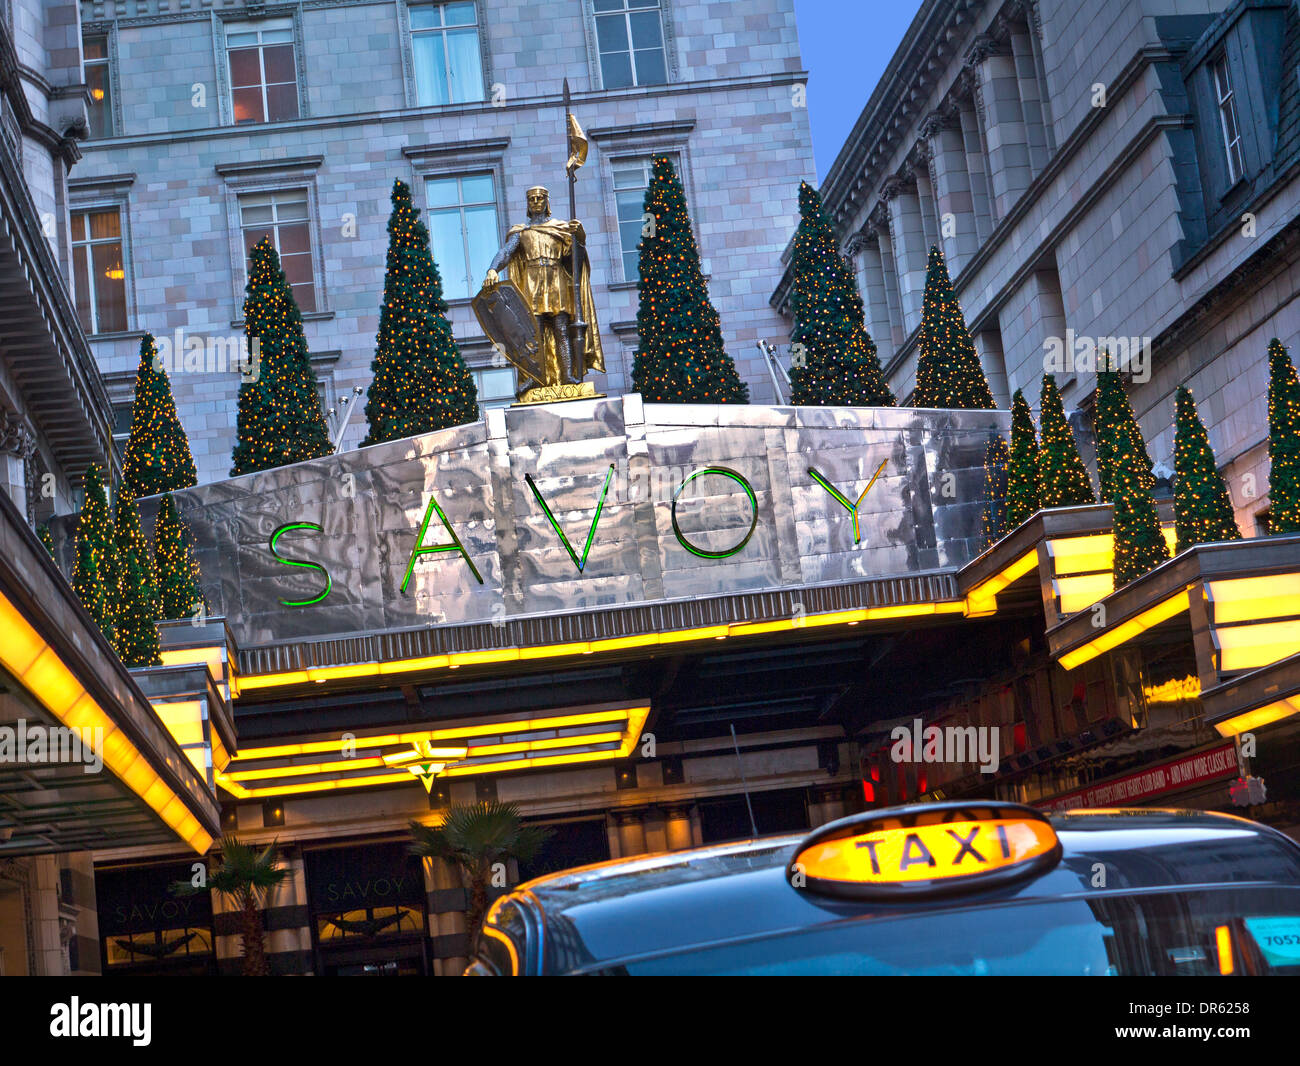 SAVOY HOTEL & TAXI Vista esterna del lussuoso ingresso del Savoy Hotel a cinque stelle a Natale con Londra taxi a noleggio in primo piano The Strand London Foto Stock